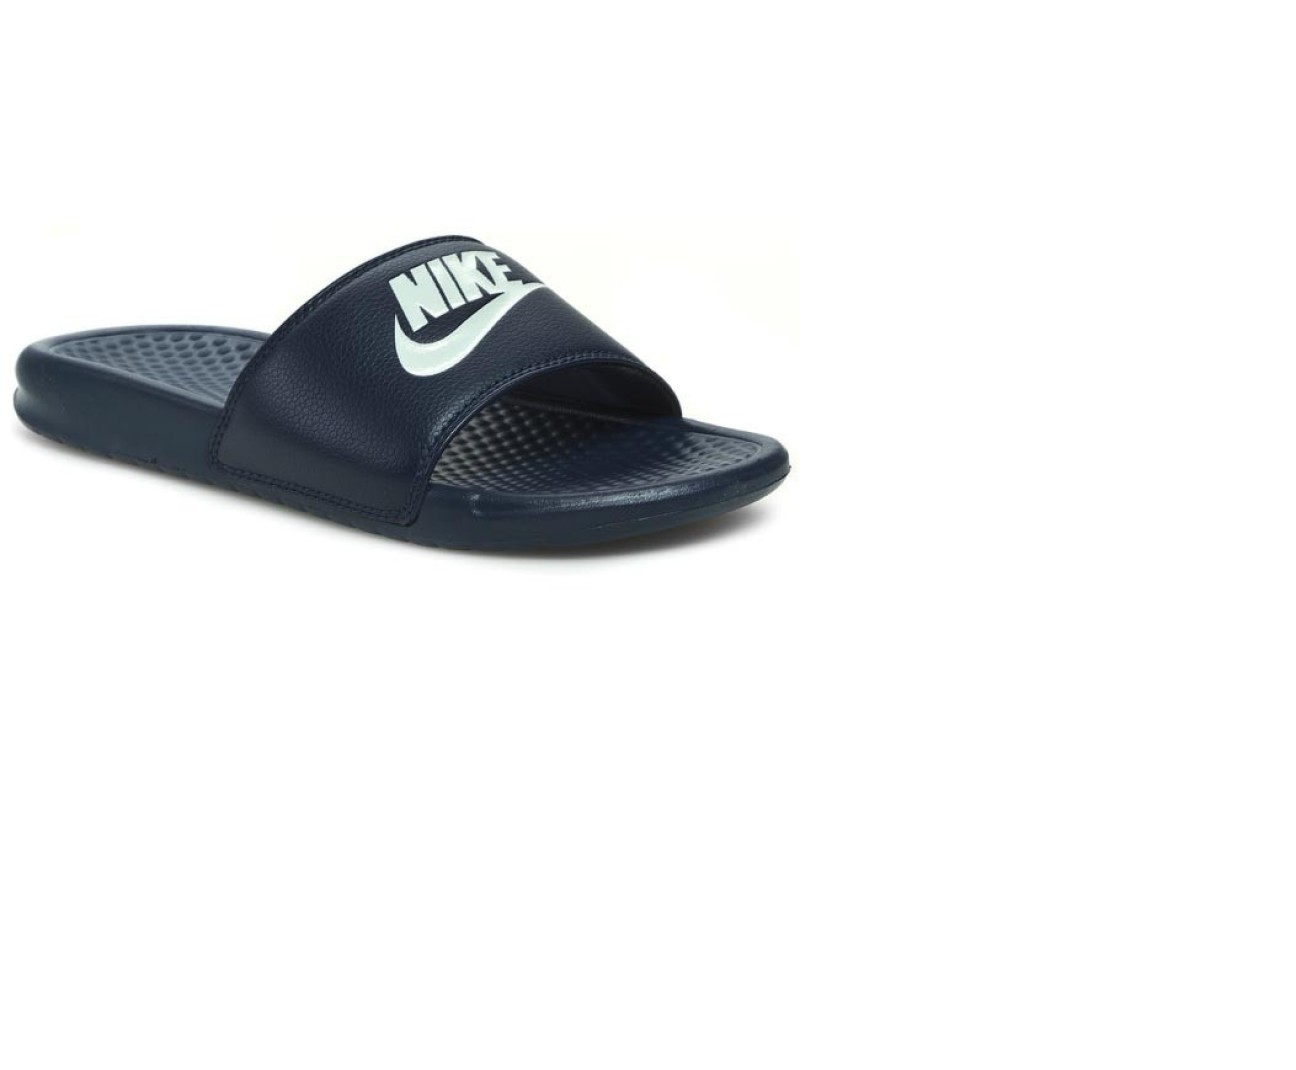 כפכפי נייק לגברים Nike Benassi jdi Slides  - כחול